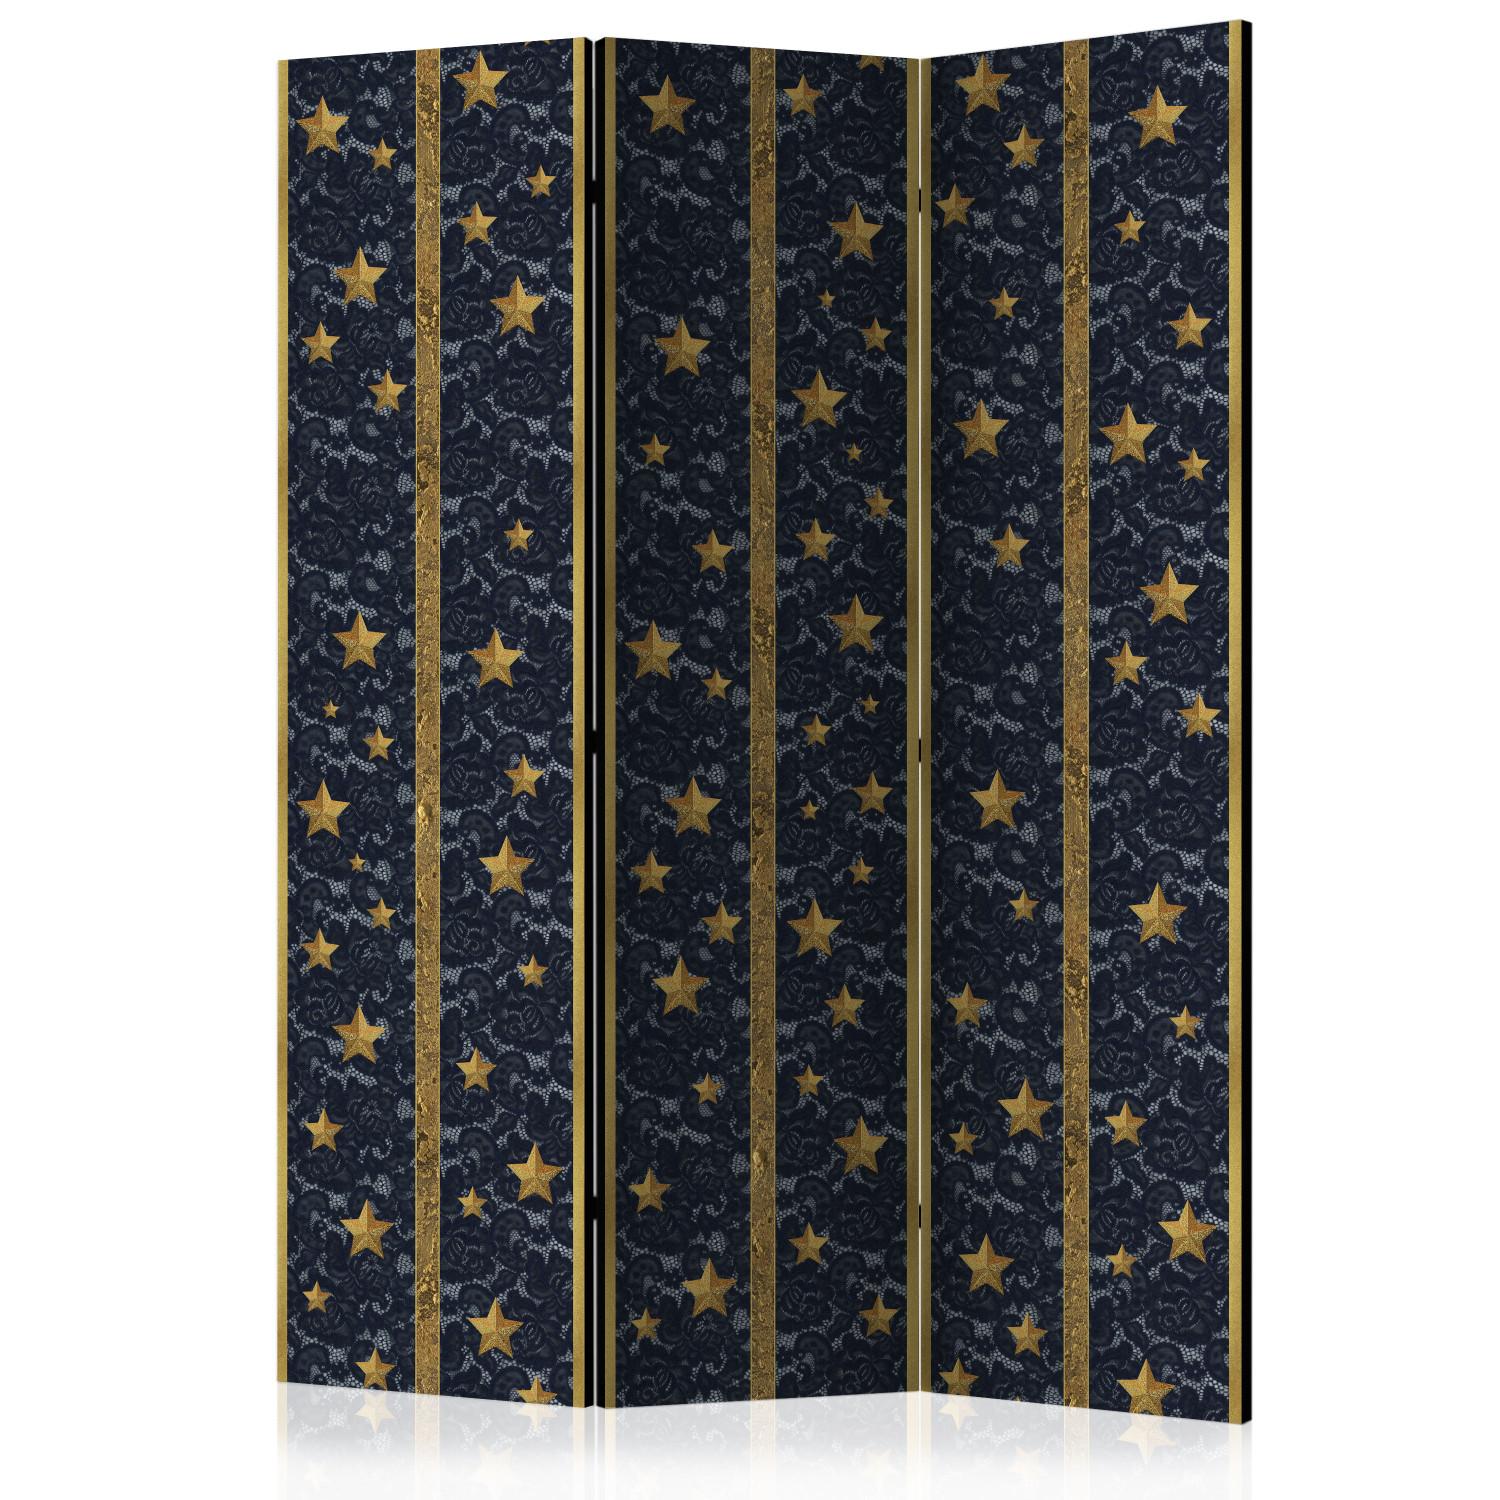 Biombo decorativo Constelación de encaje - estrellas doradas sobre tela negra de lujo